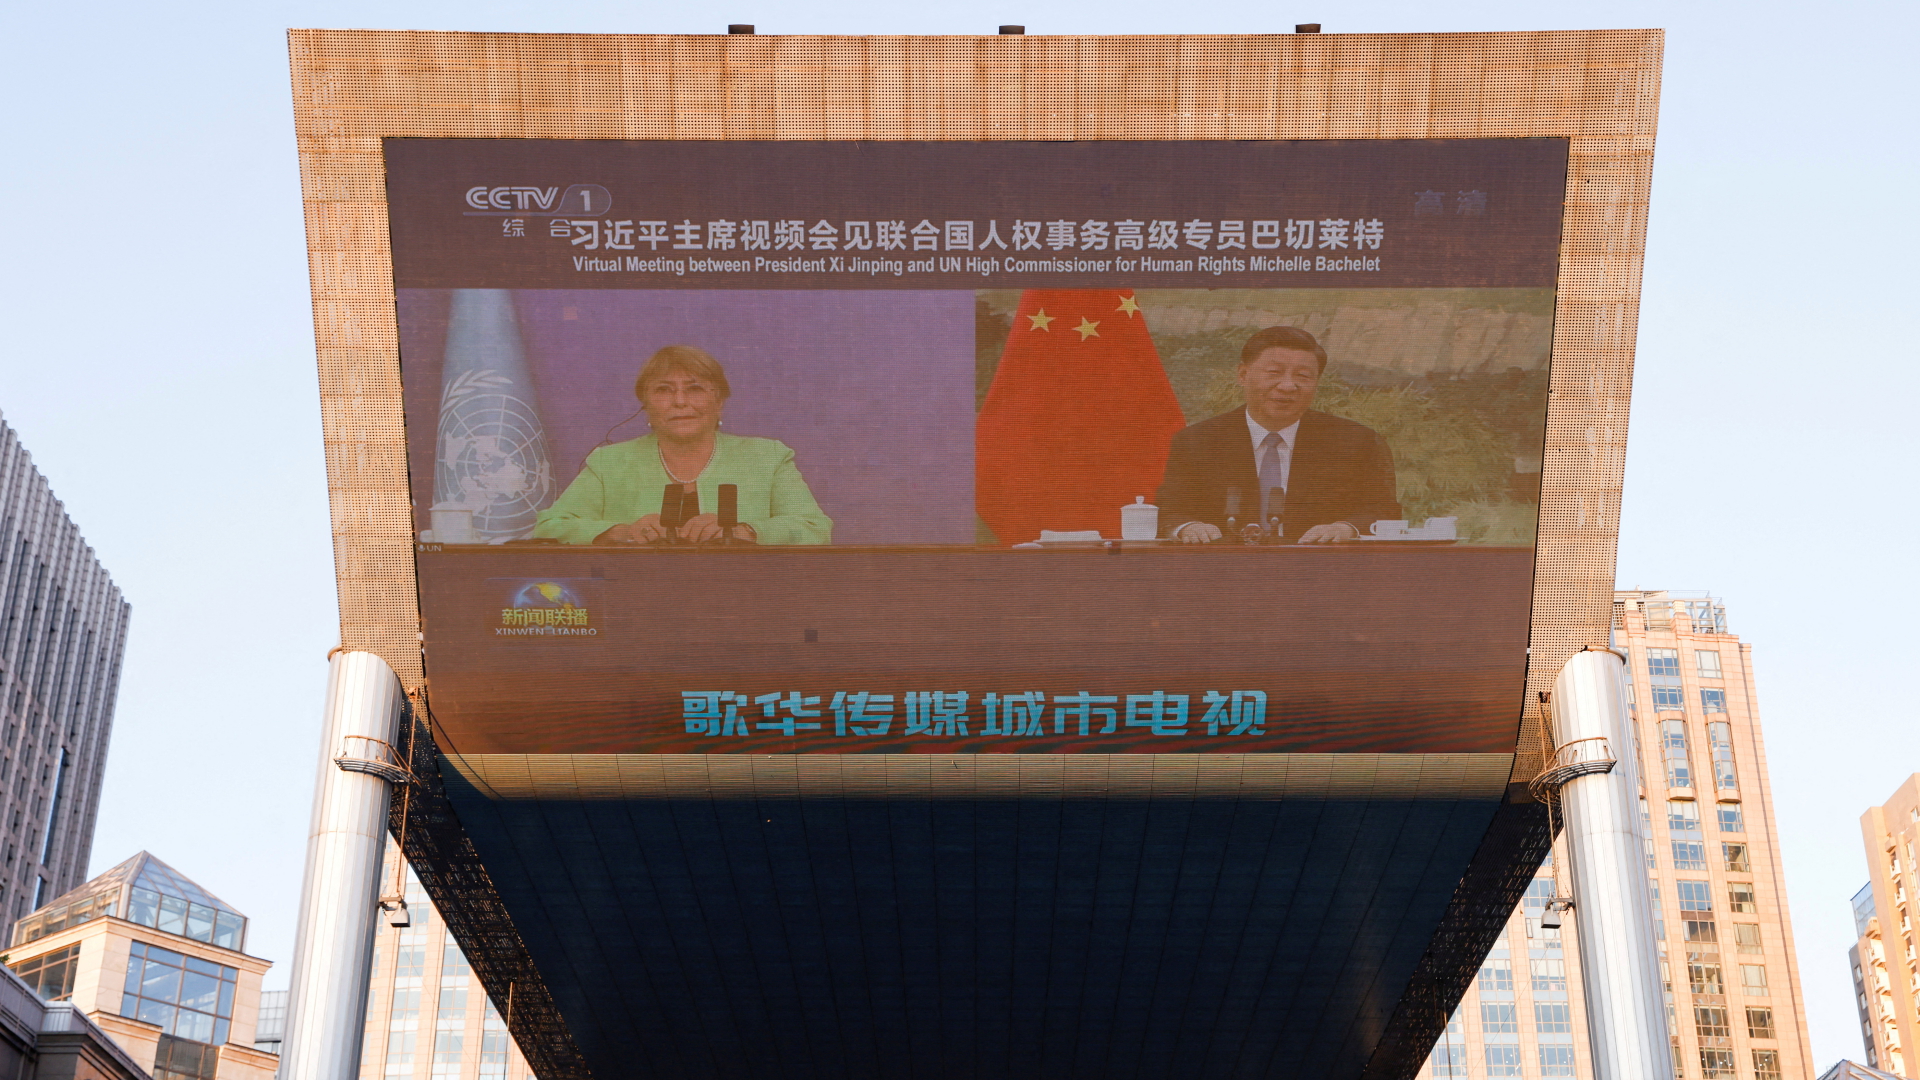 Xi Jinping and Michelle Bachelet sind bei einer Pressekonferenz auf einem Bildschirm in einem Einkaufszentrum in Peking zu sehen. | REUTERS